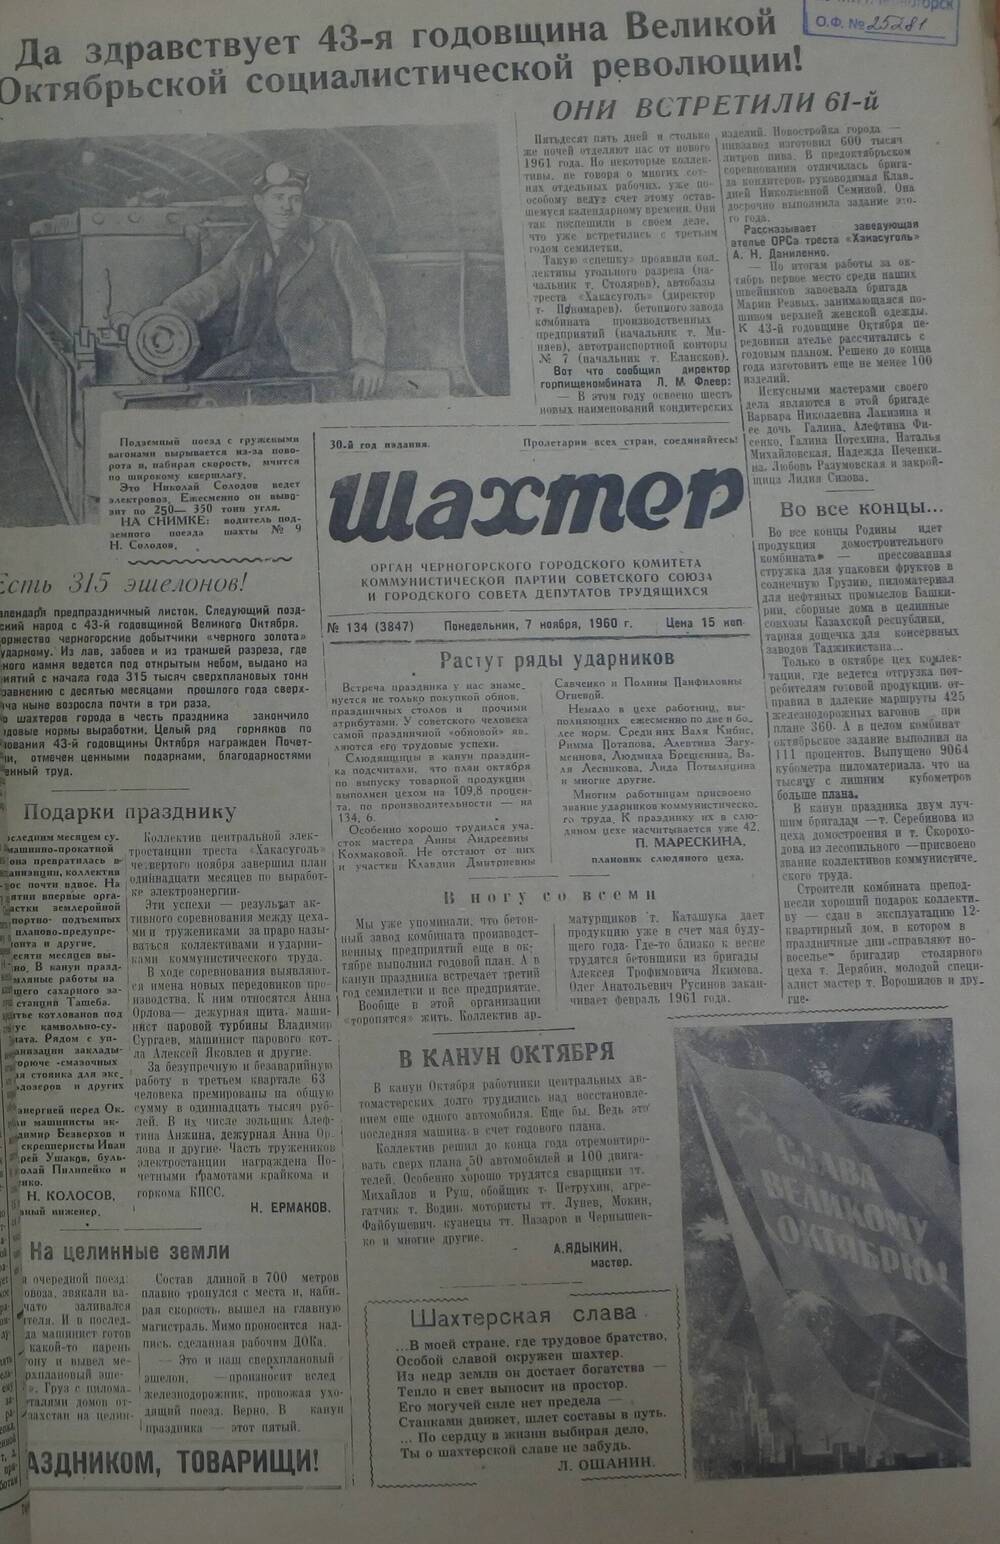 Газета «Шахтер». Выпуск № 134 от 7.11.1960 г.